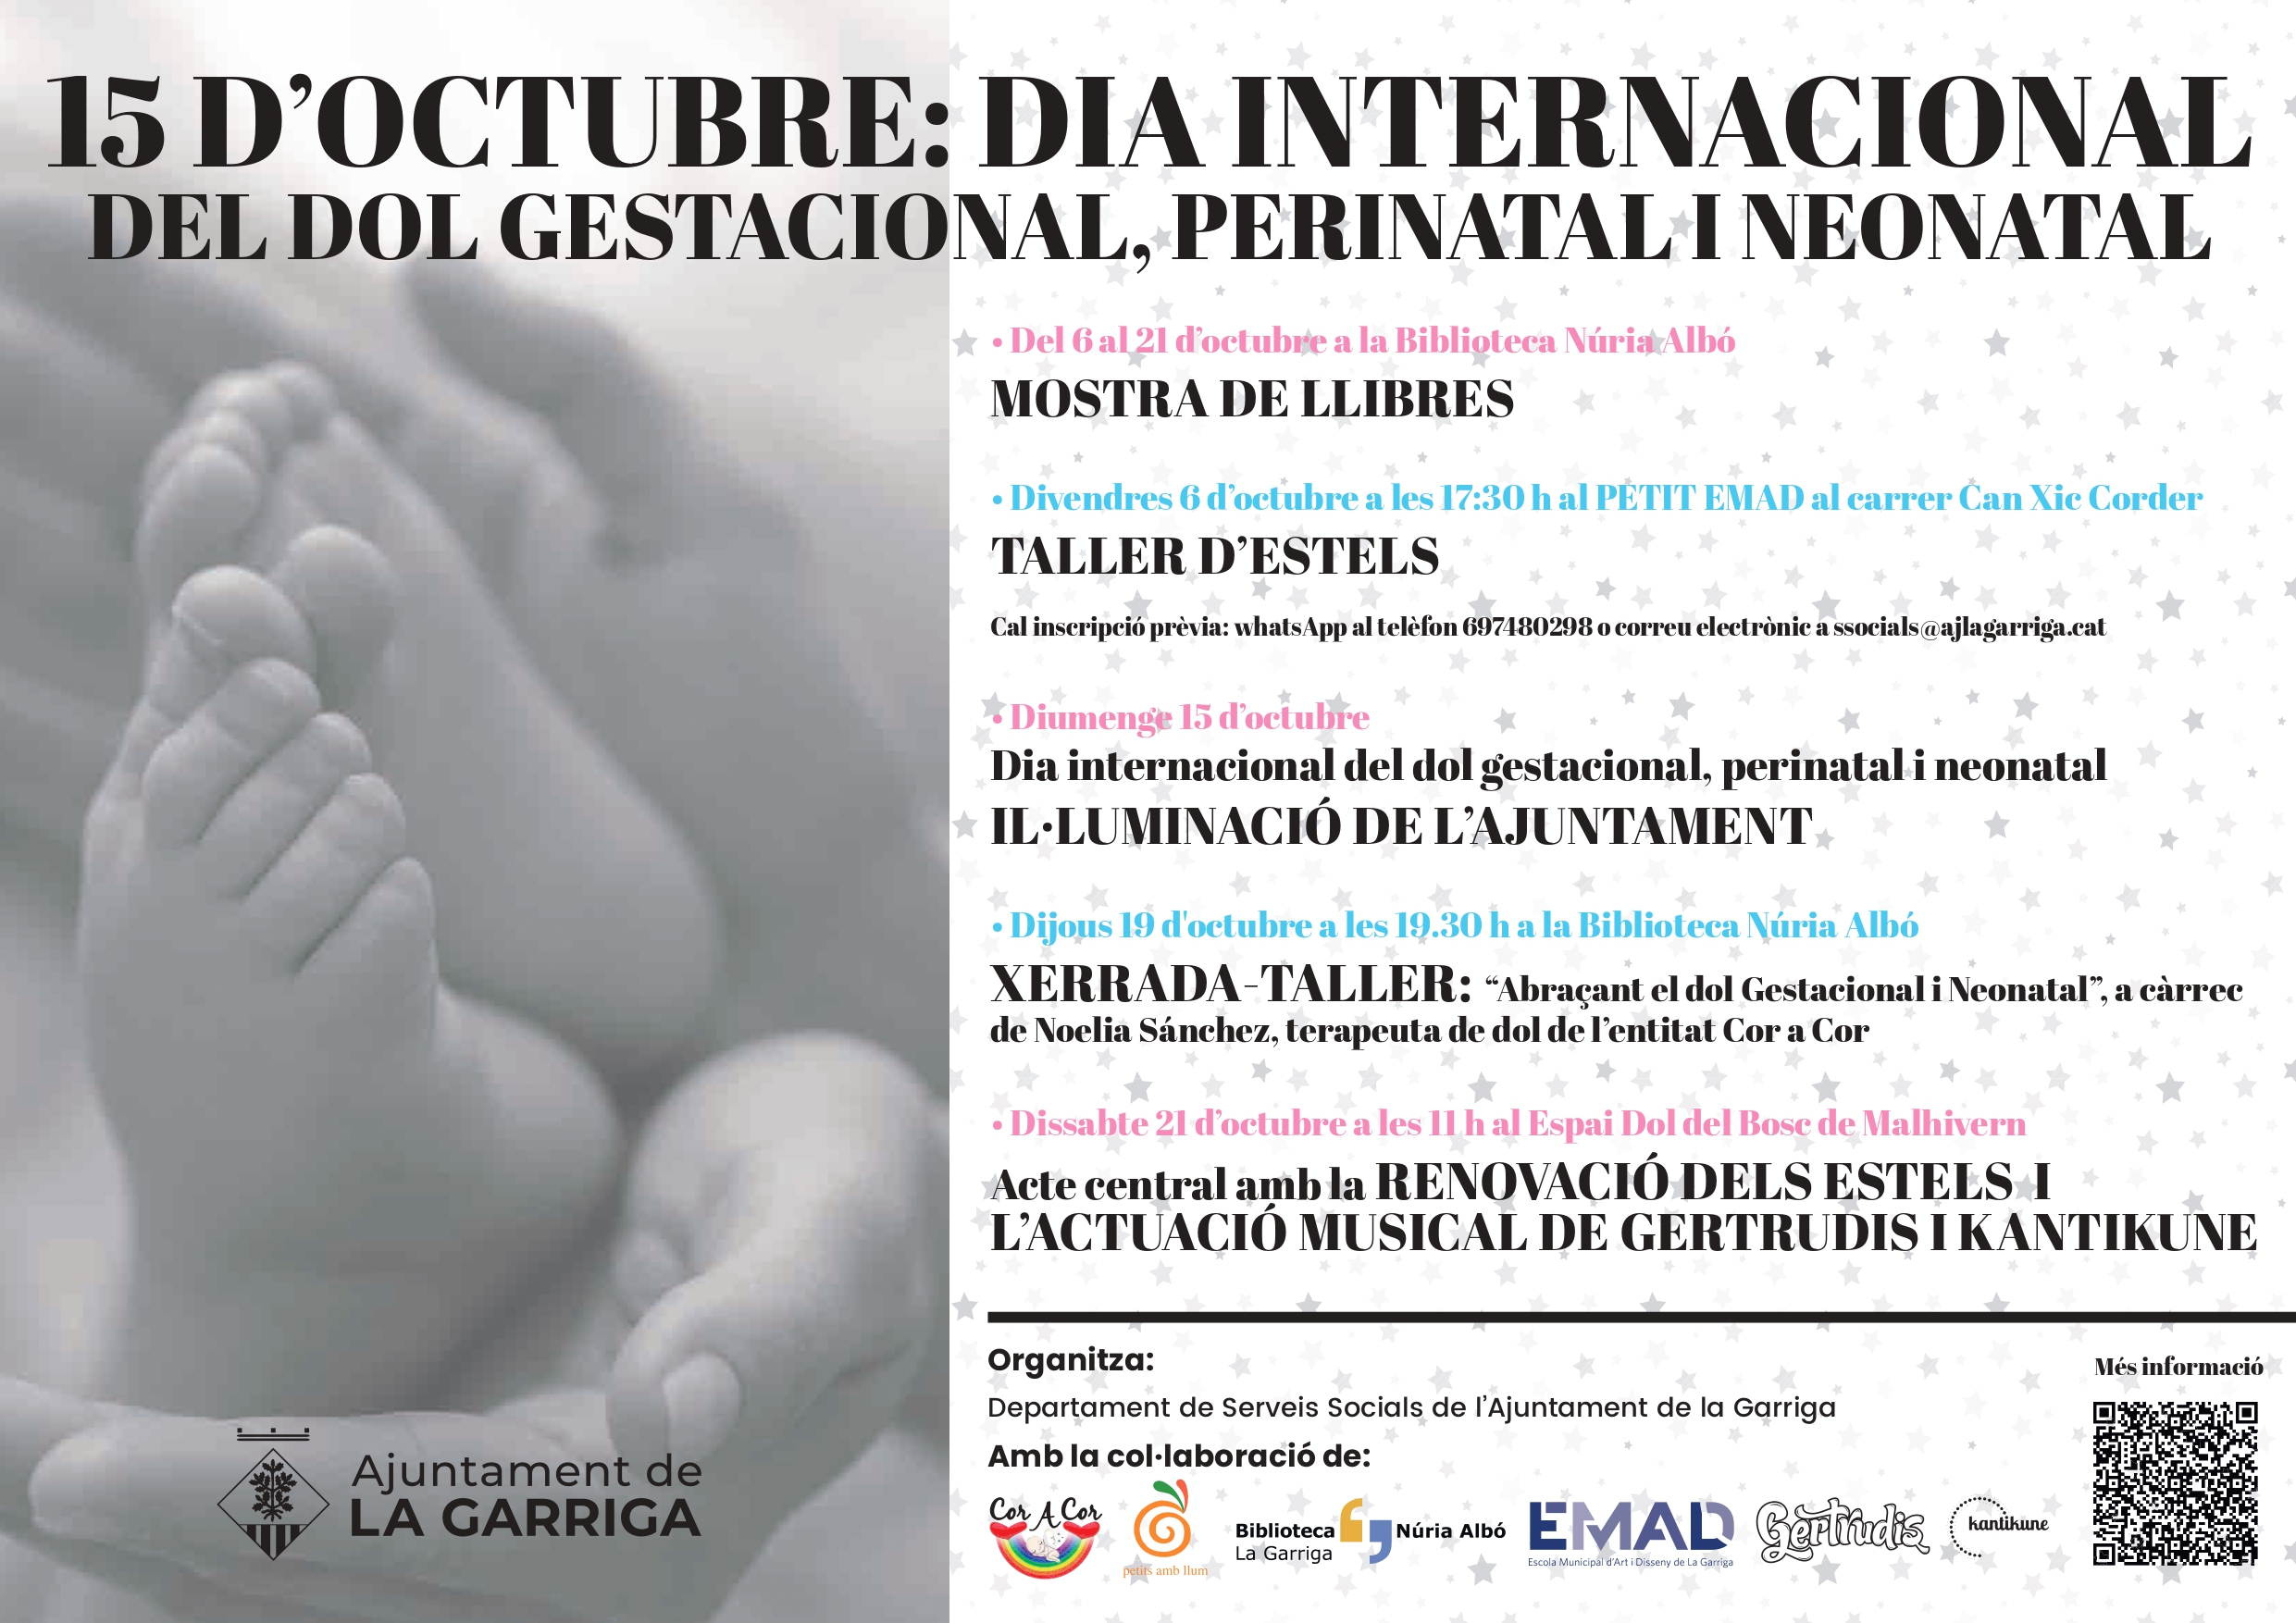 La Garriga commemora el Dia del Dol Gestacional, Perinatal i Neonatal